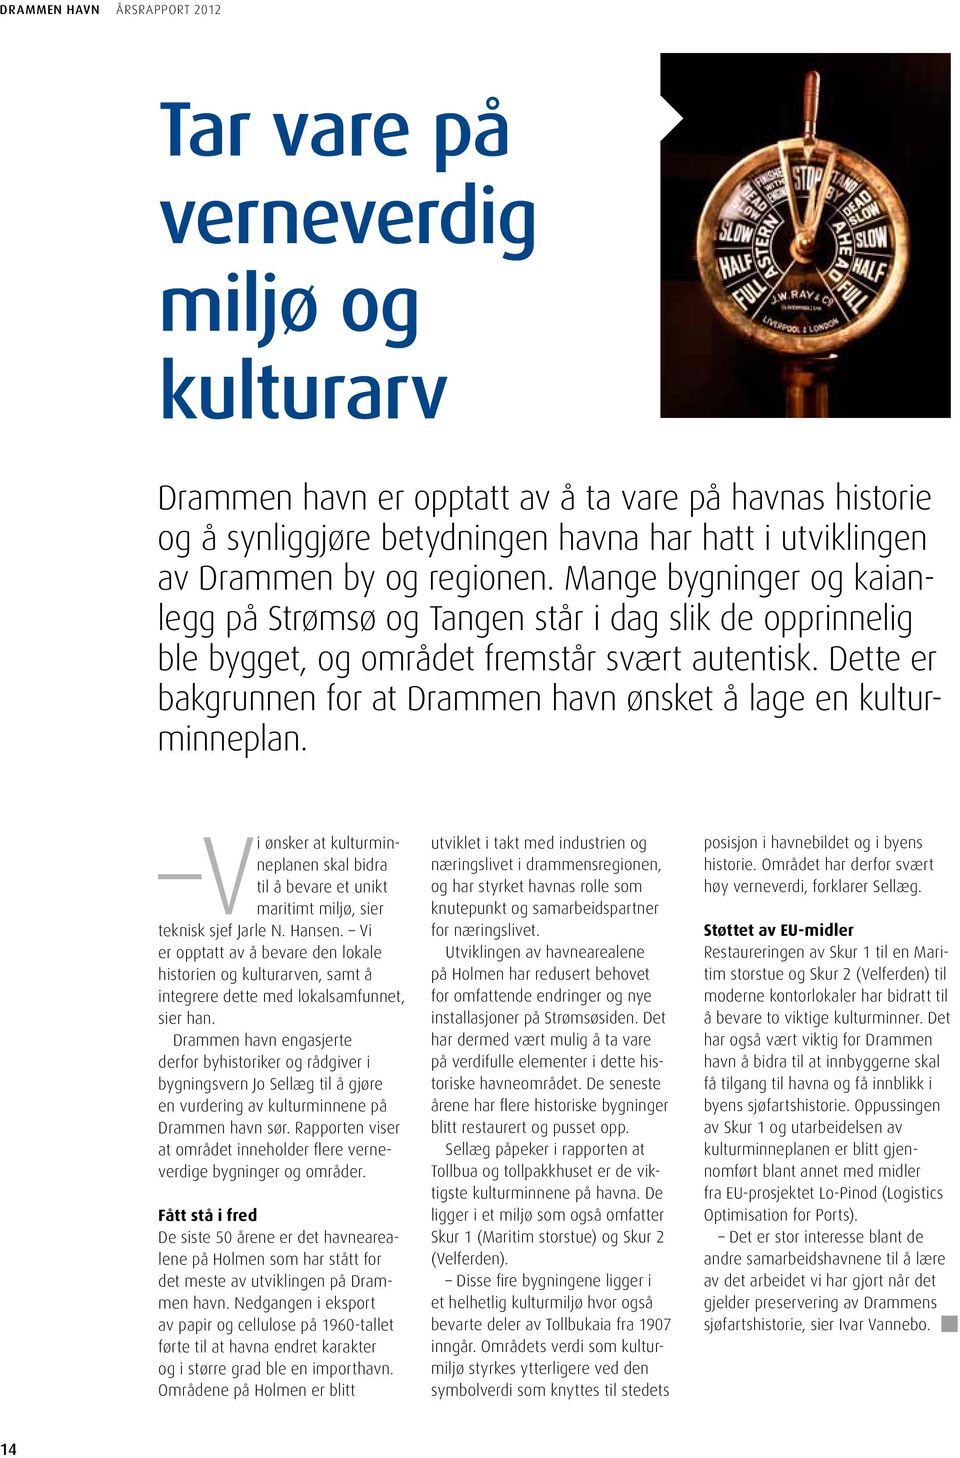 Dette er bakgrunnen for at Drammen havn ønsket å lage en kulturminneplan. Vi ønsker at kulturminneplanen skal bidra til å bevare et unikt maritimt miljø, sier teknisk sjef Jarle N. Hansen.